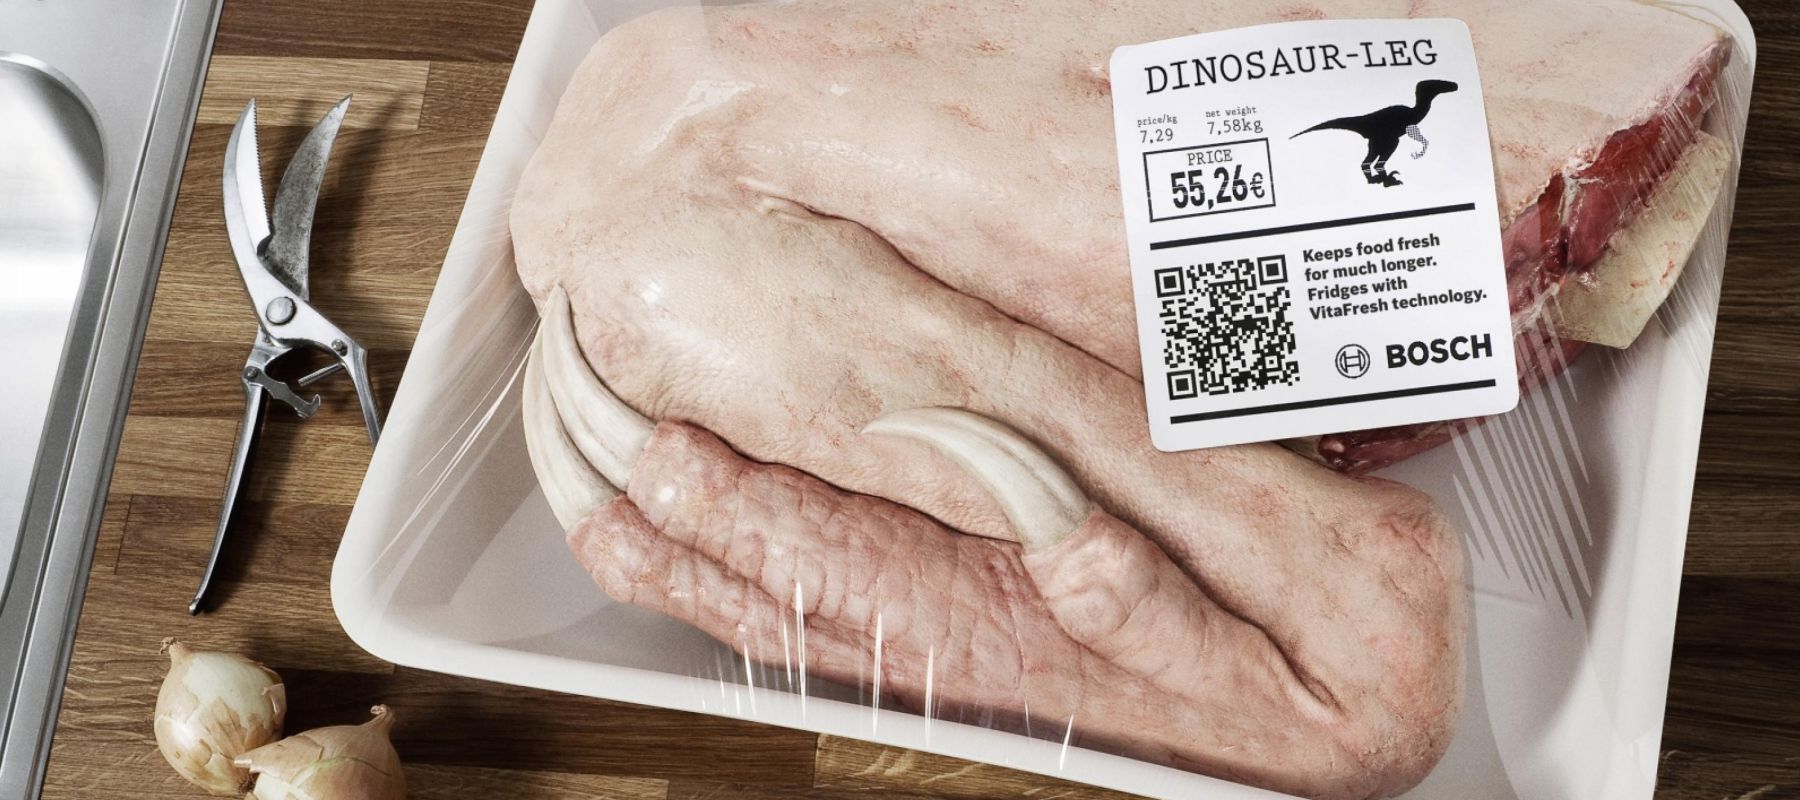 A qué sabe la carne de dinosaurio? | El Comidista EL PAÍS